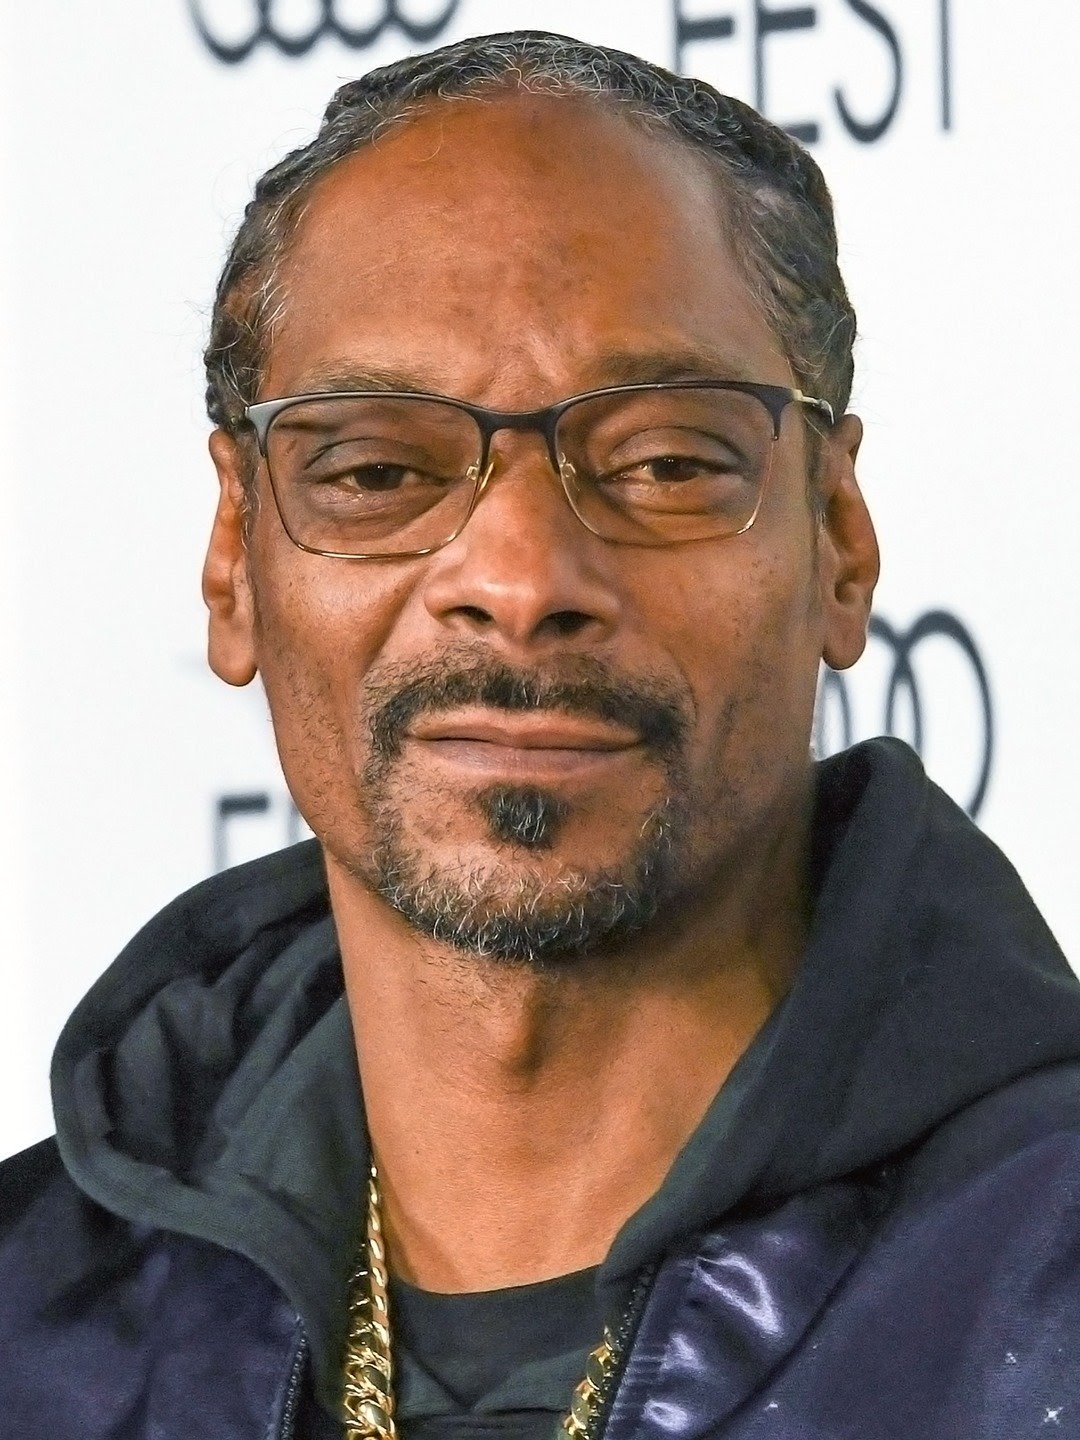 Snoop Dogg - Wikipedia